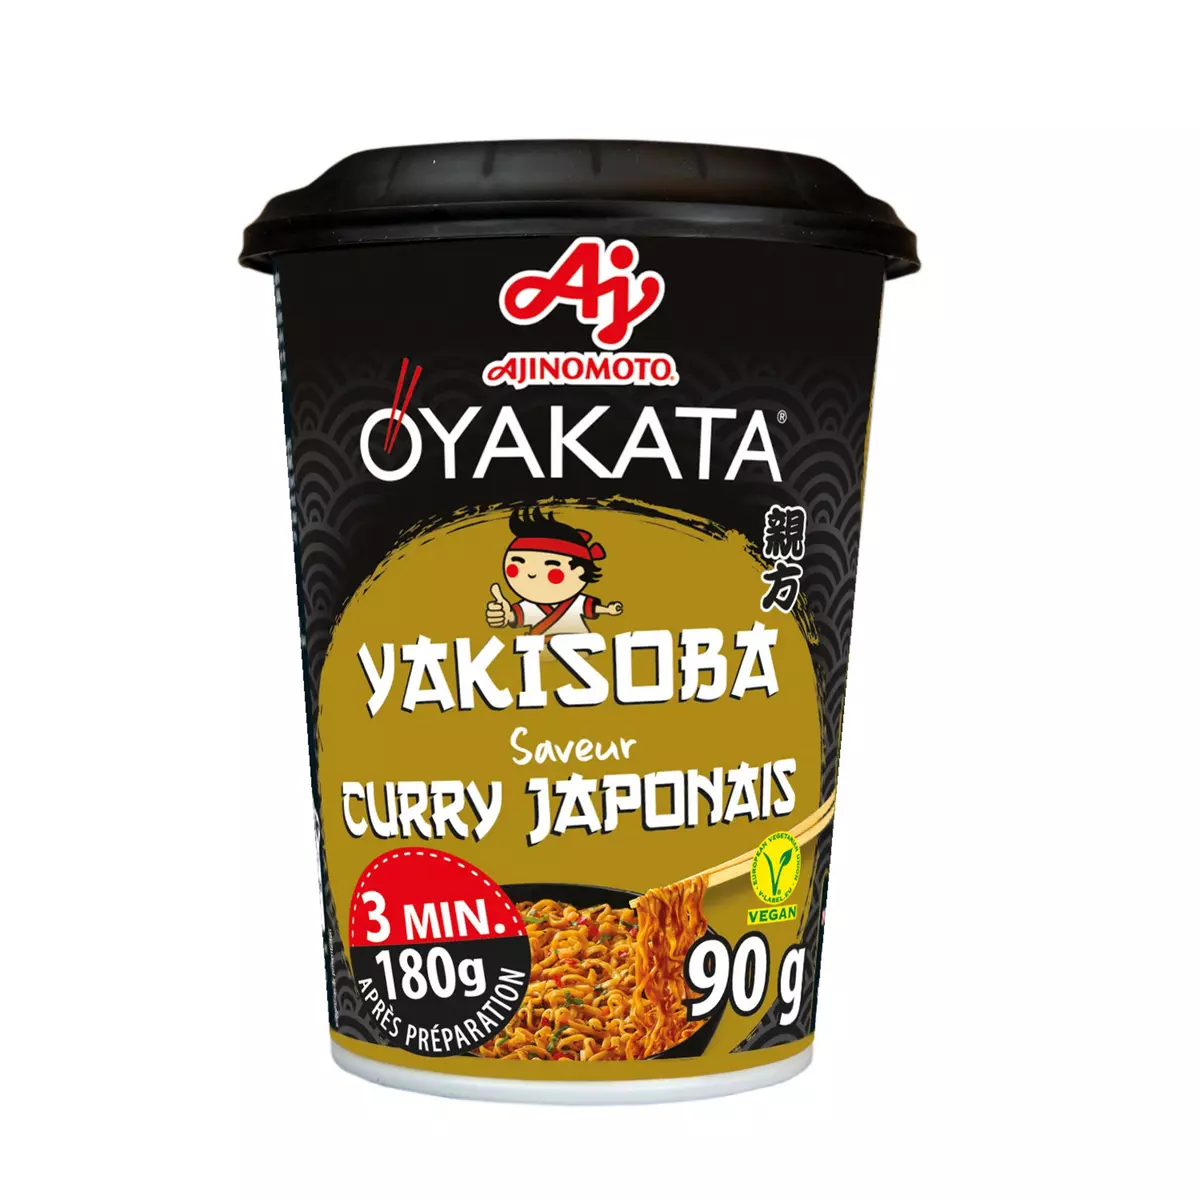 OYAKATA Cup nouilles sautées sauce Yakisoba saveur curry Japonais 1 personne 180g